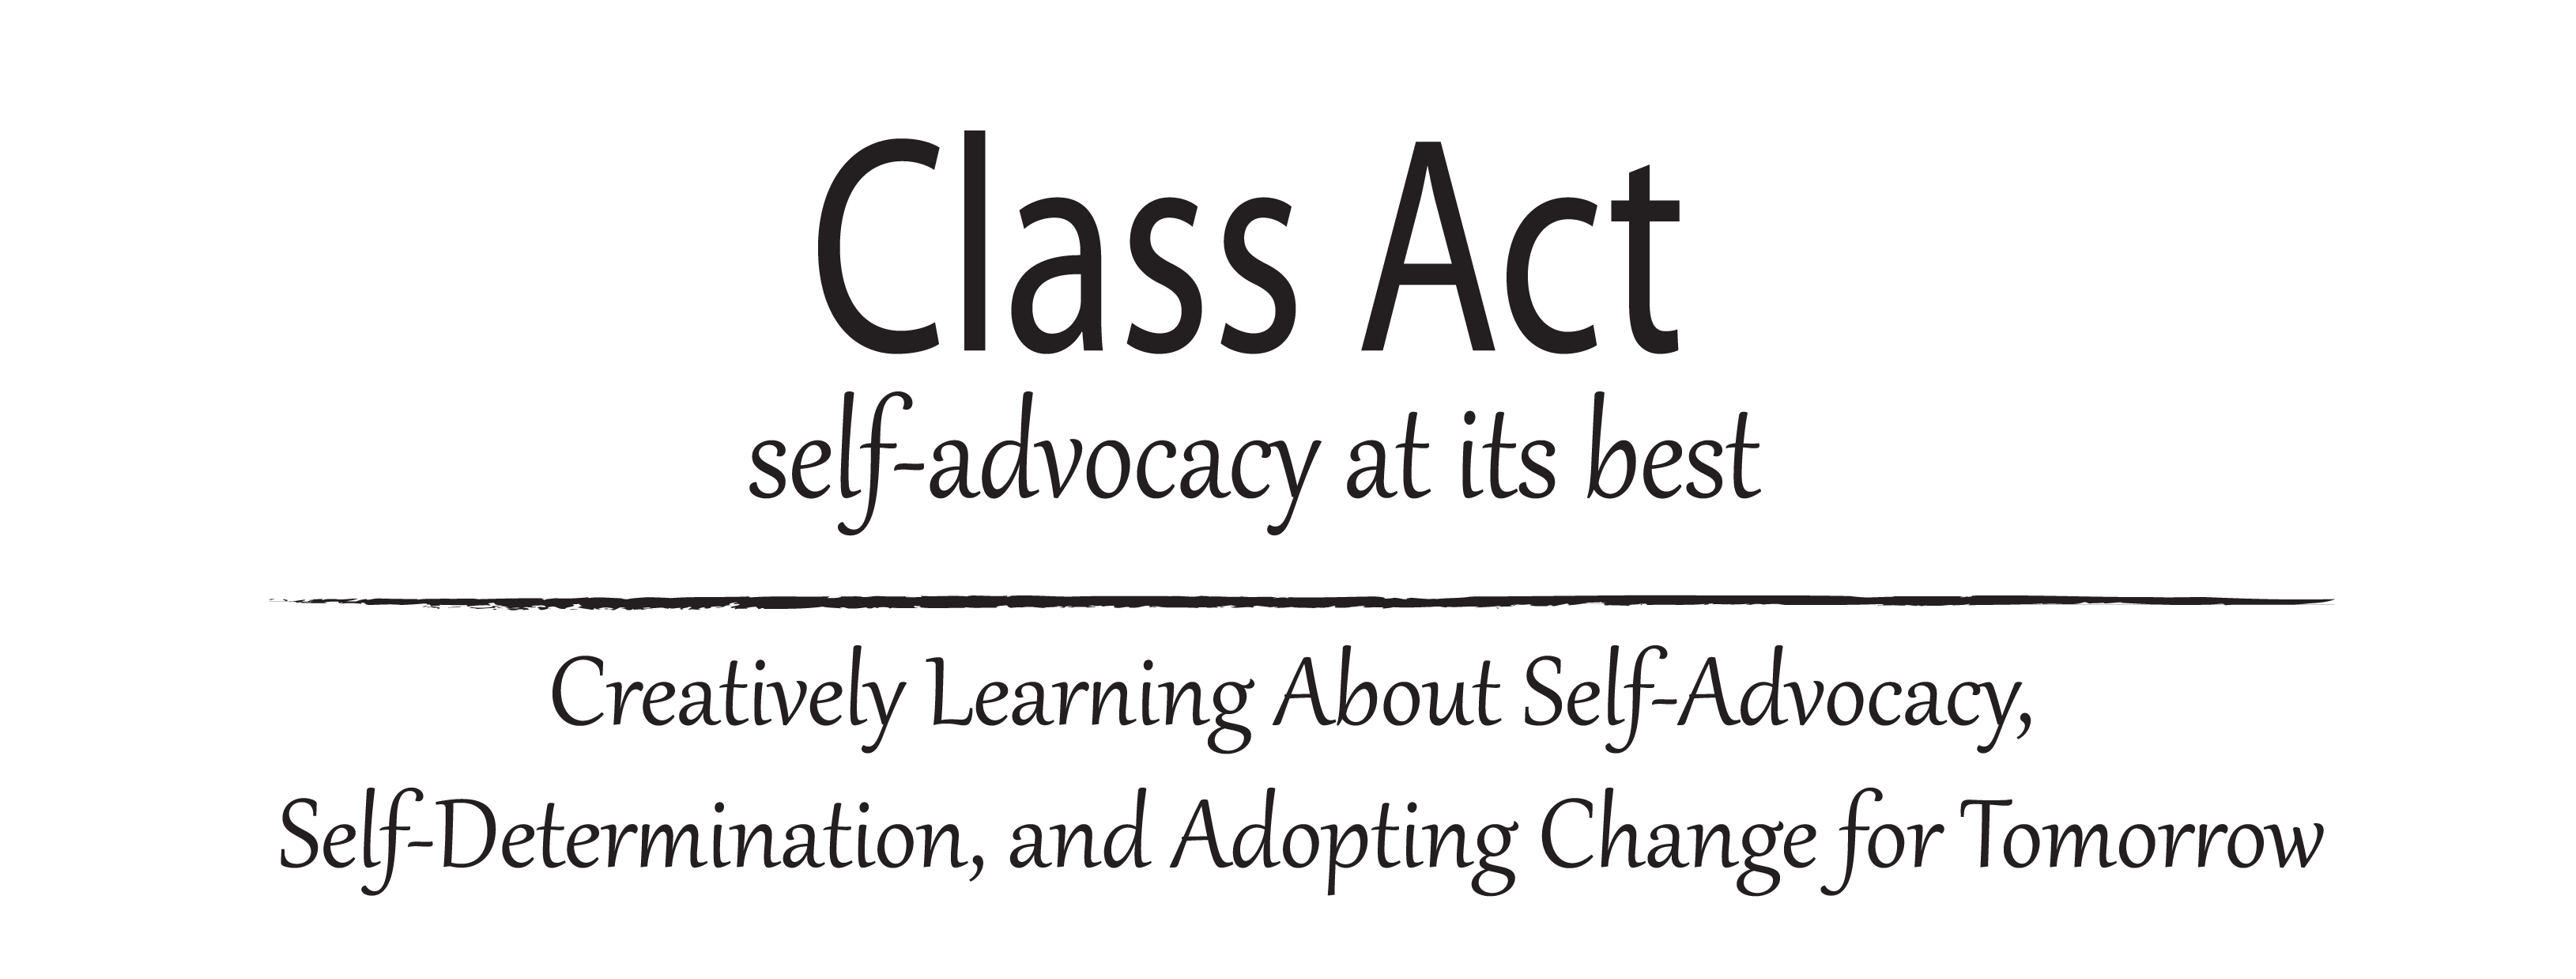 Class Act Logo Text.png